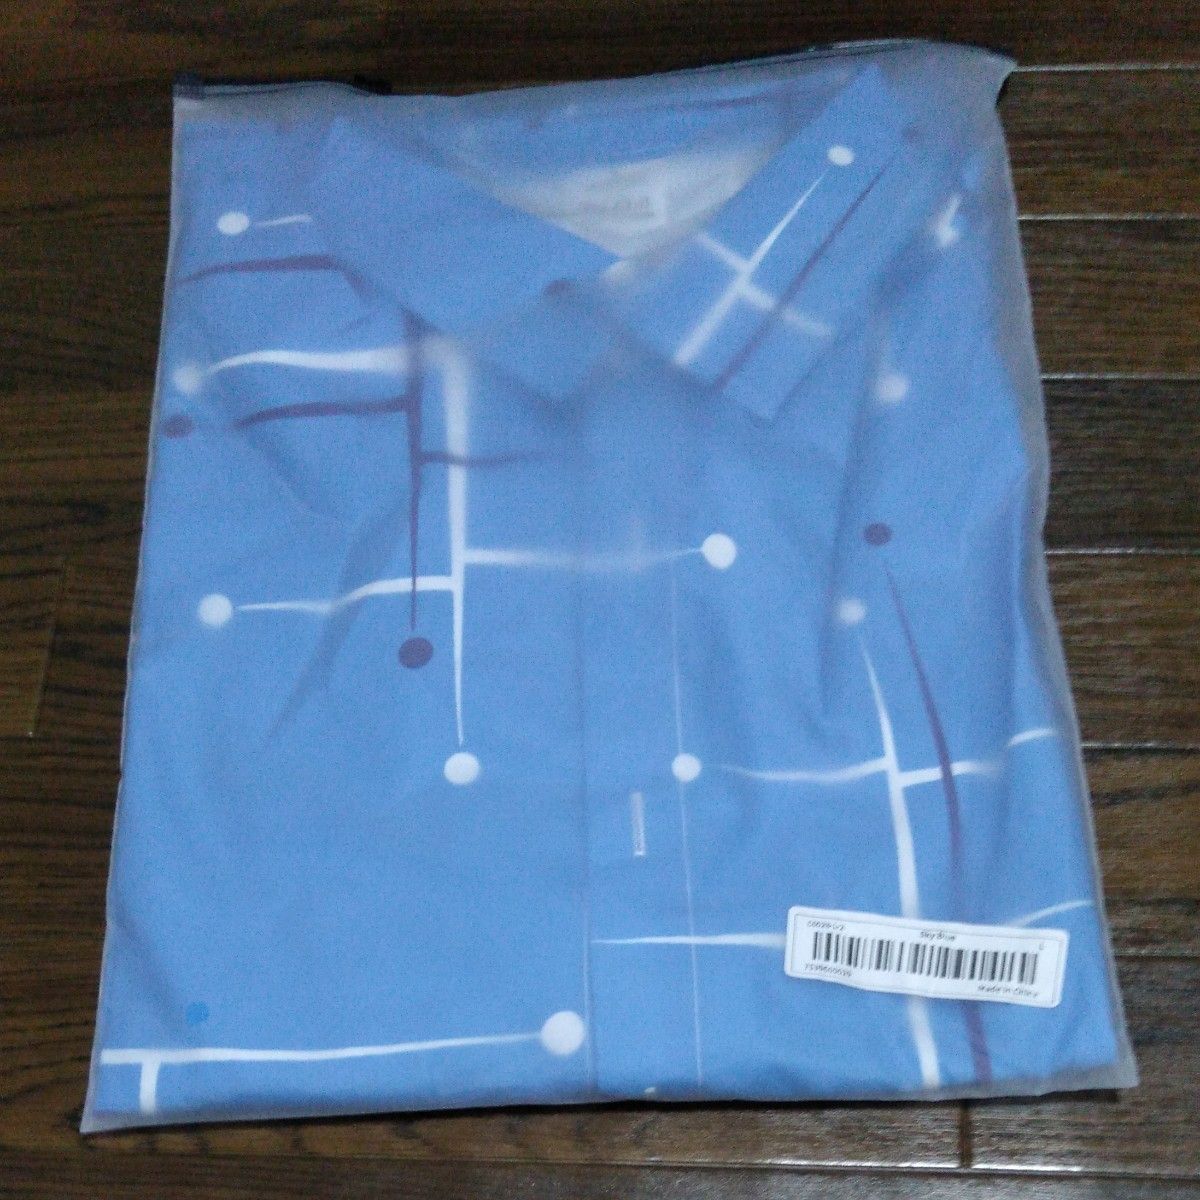 新品未使用半袖シャツ ジオメトリック柄 3Lサイズ 2XLサイズ 青 ブルー 夏物セール 